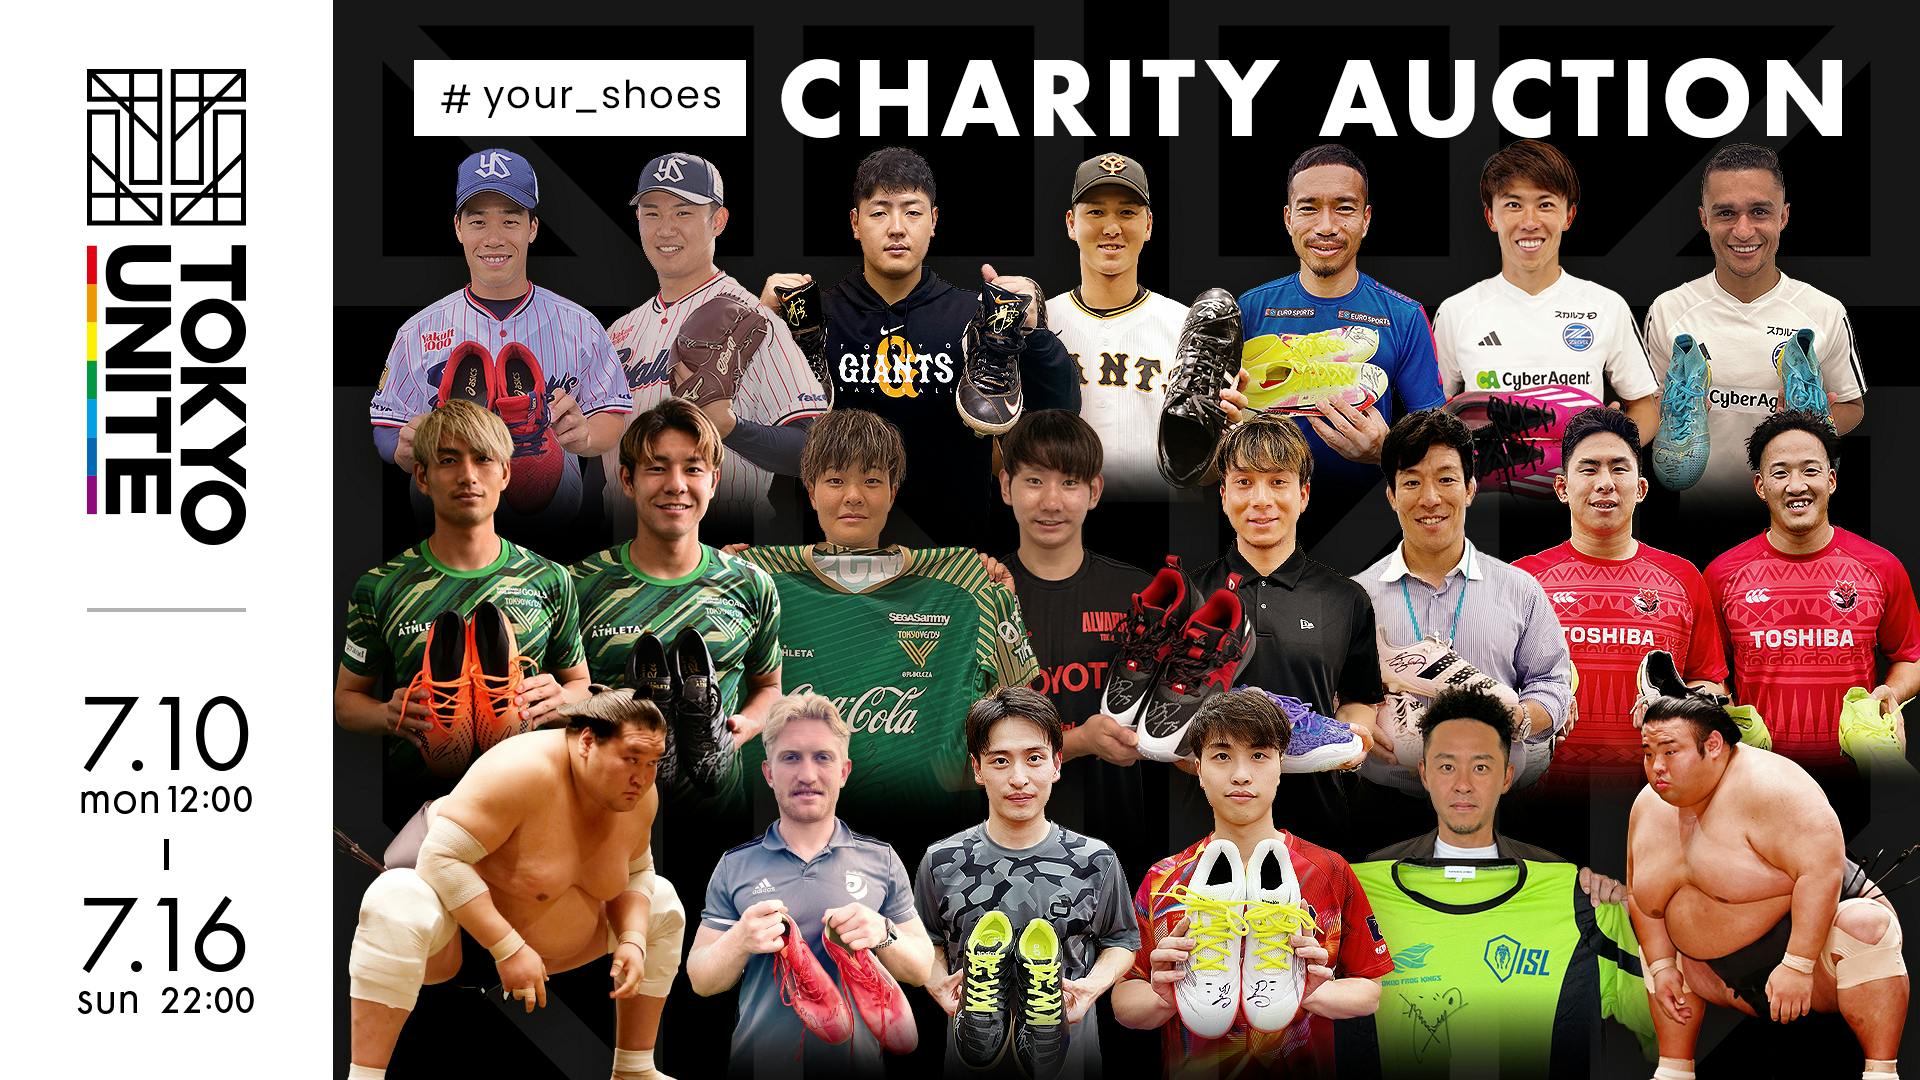 子どもたちにスポーツシューズを届ける「#your_shoes」プロジェクト<br>今年もチャリティーオークション実施